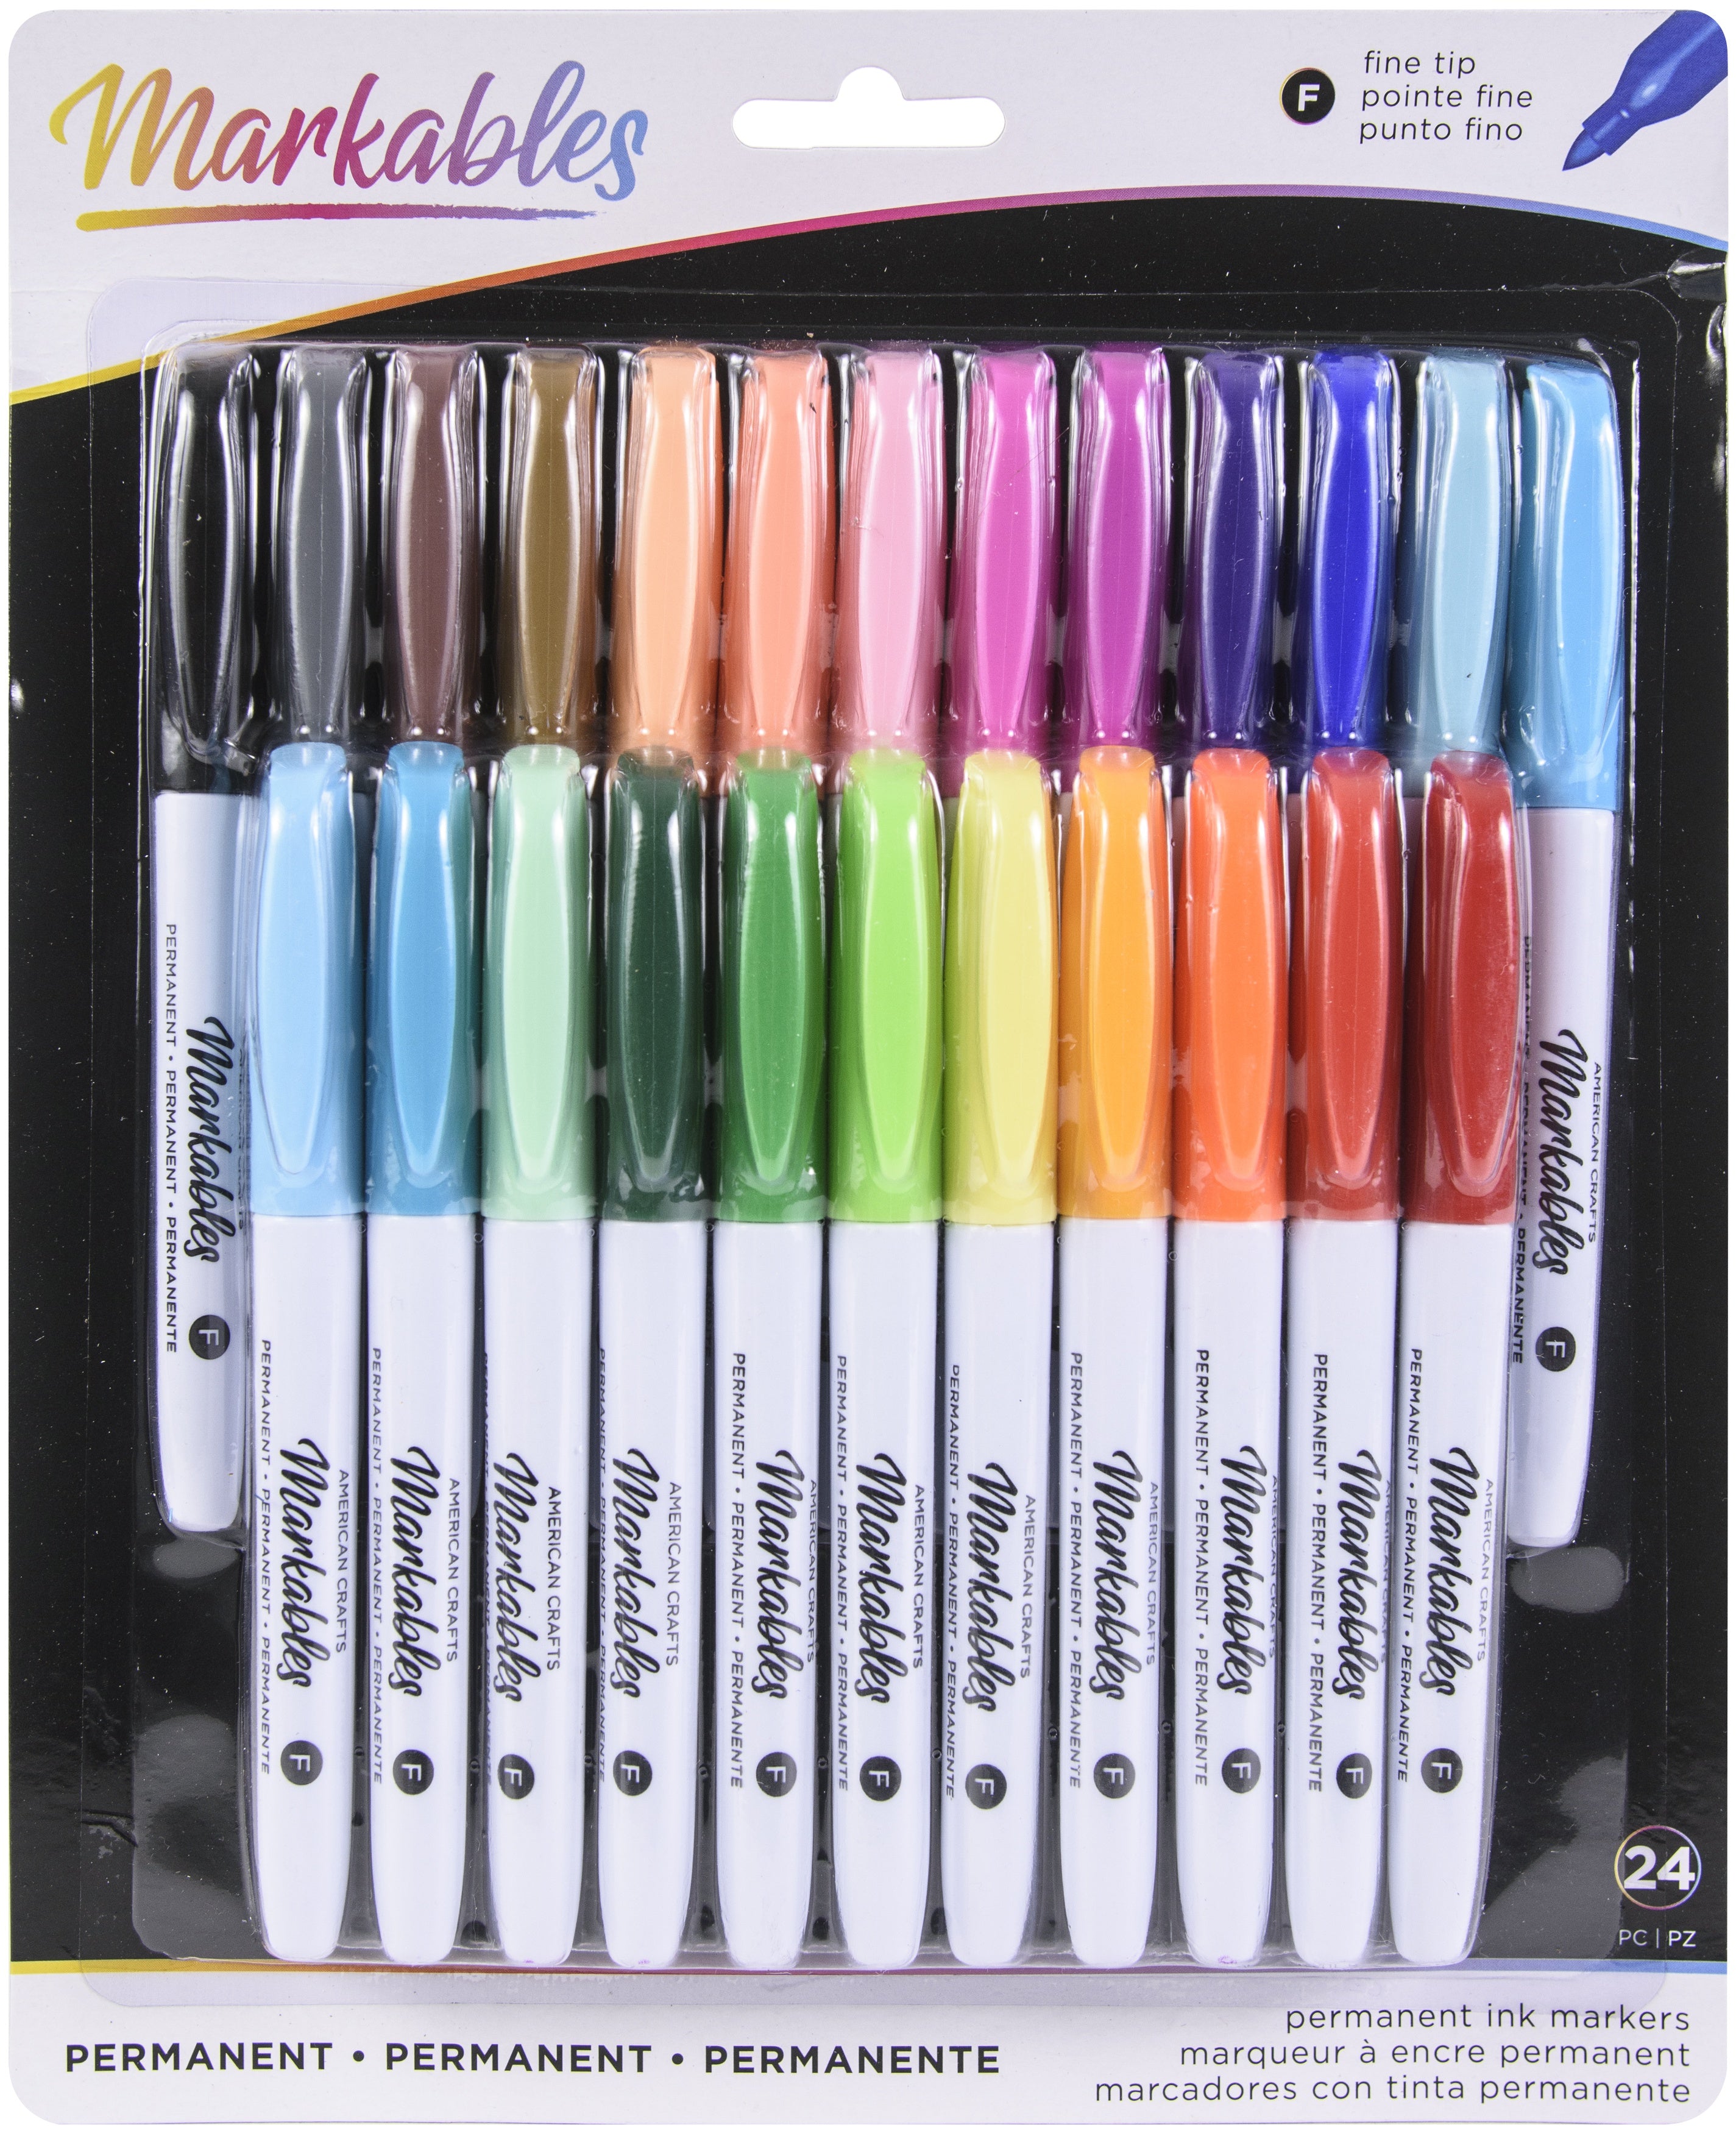 Basics Felt Tip Marker Pens - Assorted Color, 24-Pack